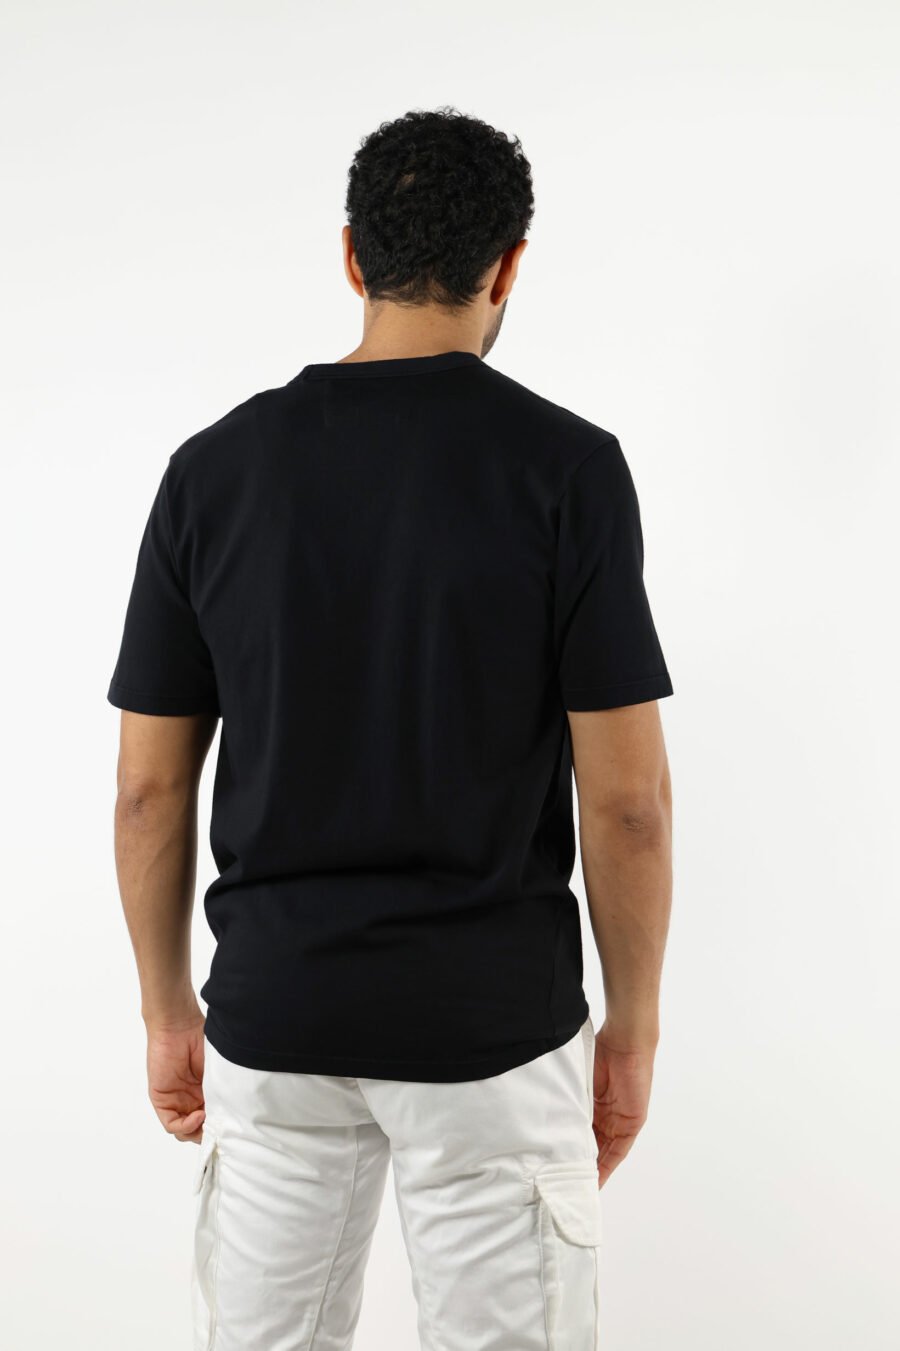 Camiseta negra con bolsillos y minilogo "cp" - 111332